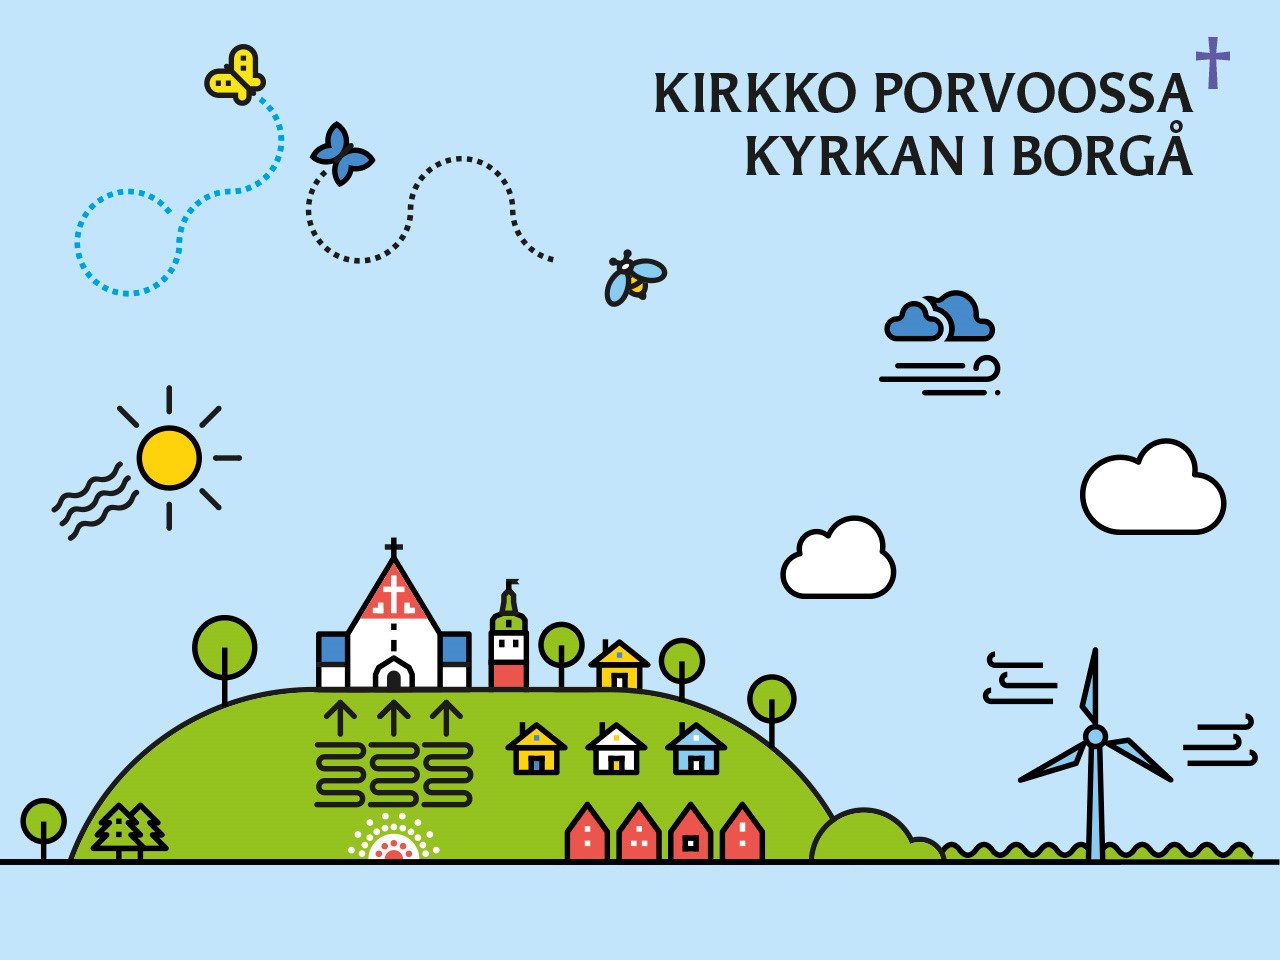 Tecknad bild av Borgå med miljösymboler såsom jordvärme och vindkraft. Texten Kirkko Porvoossa Kyrkan i Bor...